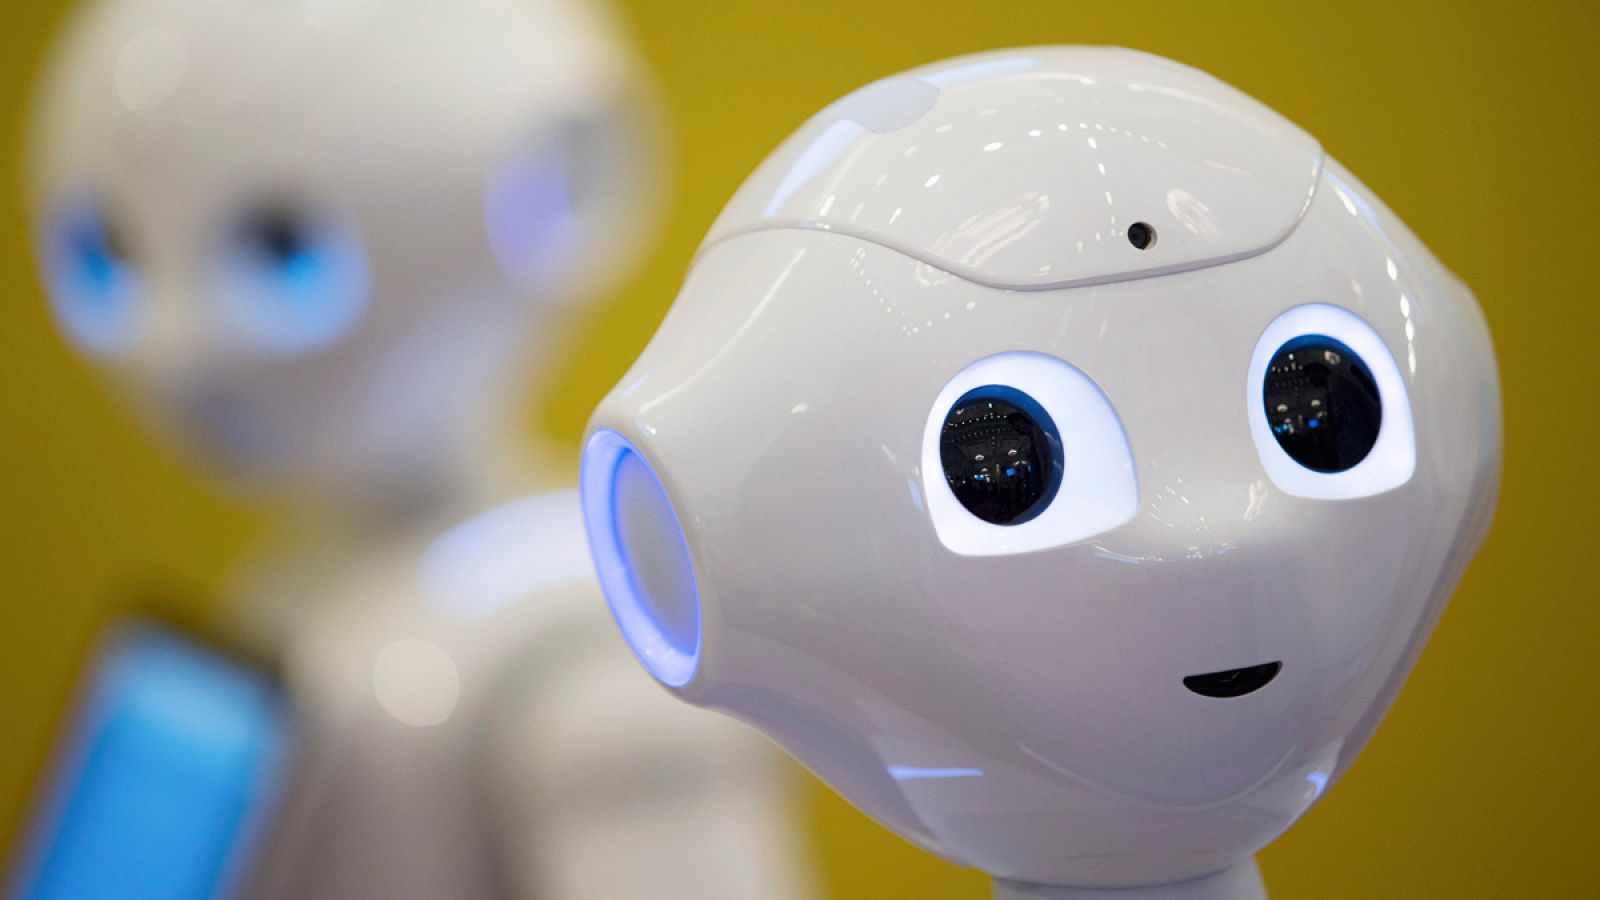 El robot Pepper tiene capacidad de aprendizaje, recogiendo e incorporando todos los datos que recibe.